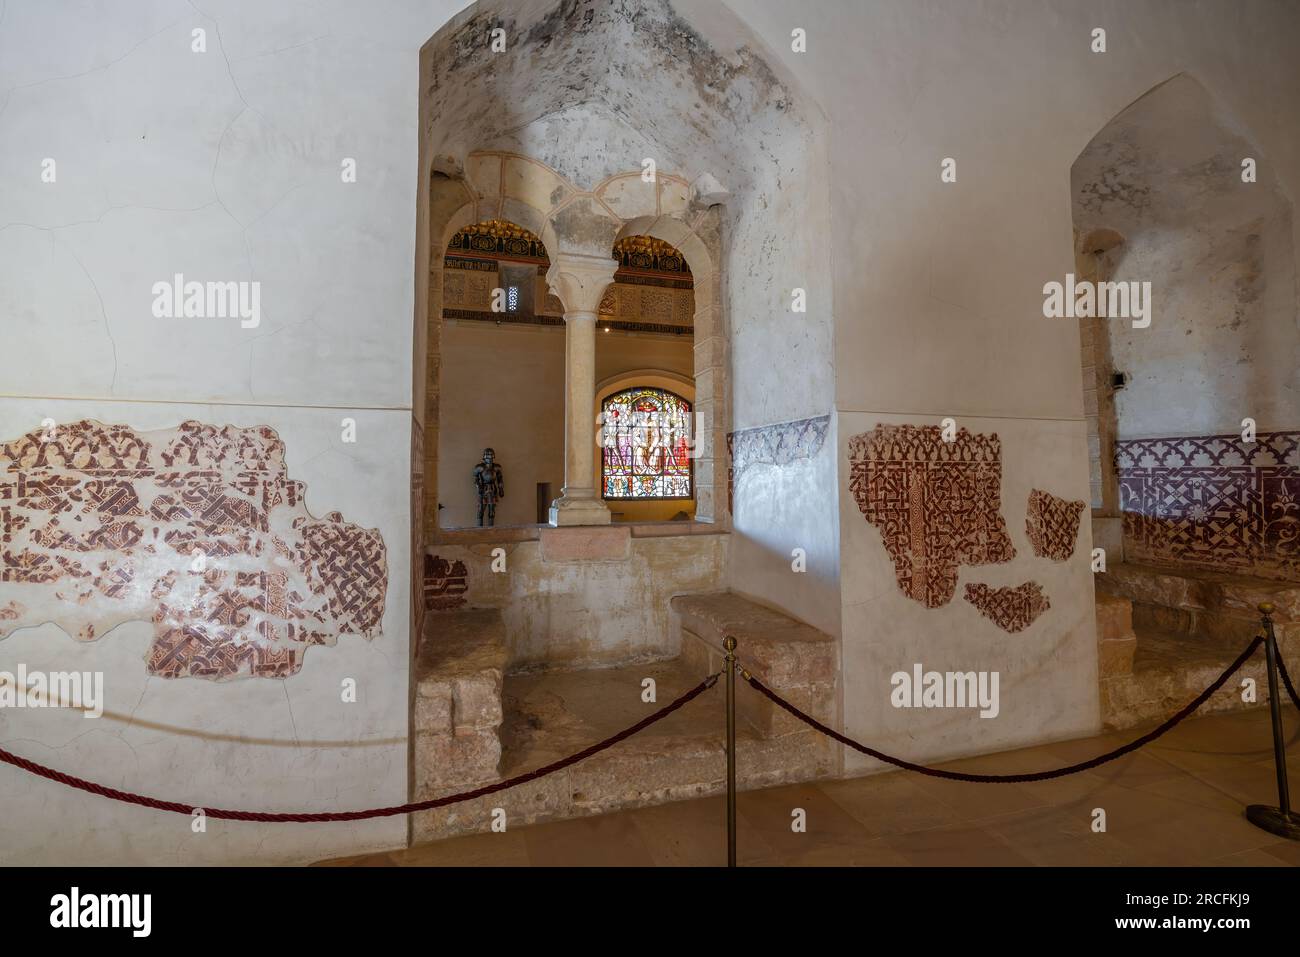 Hall of the Old Palace at Alcazar of Segovia Interior - Segovia, Spain Stock Photo